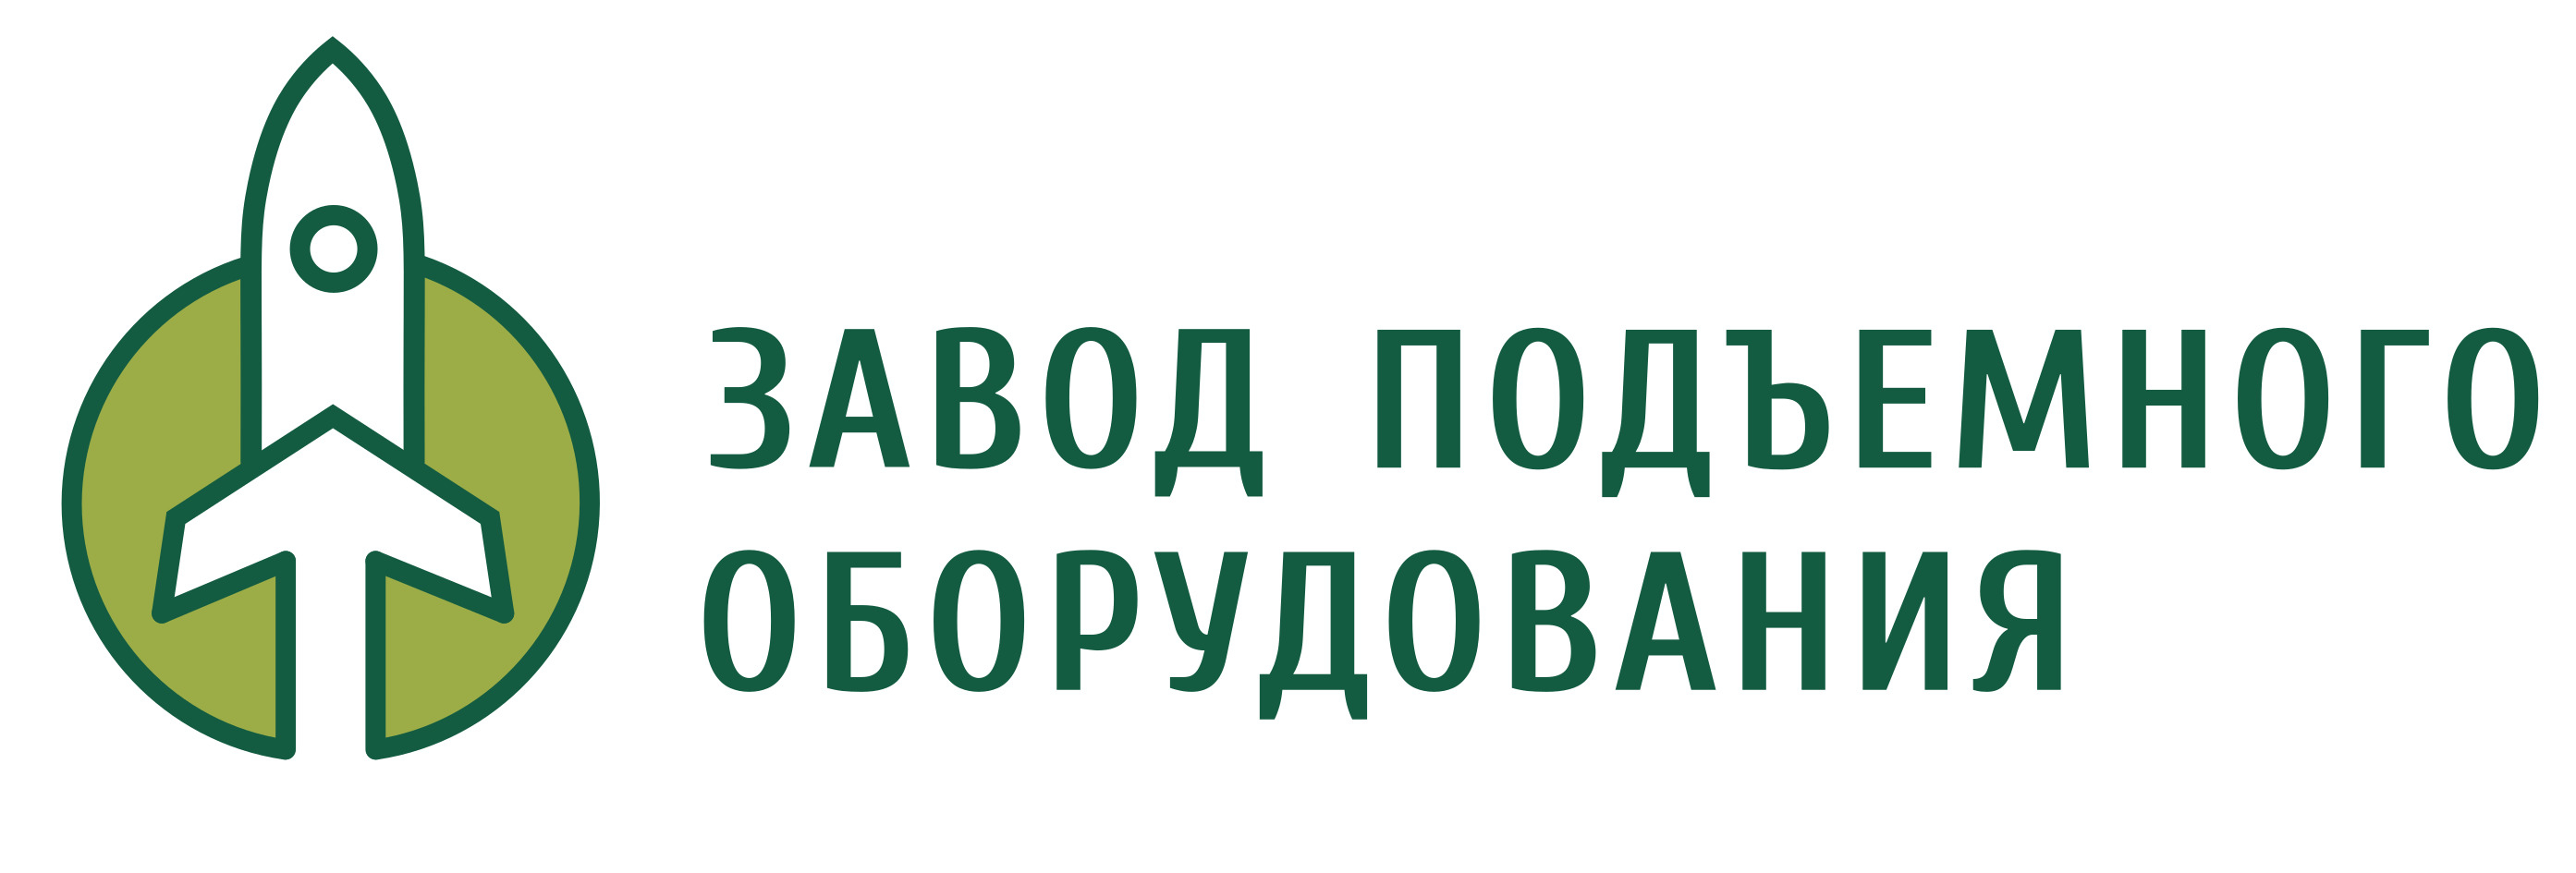 Логотип Завод подъемного оборудования 